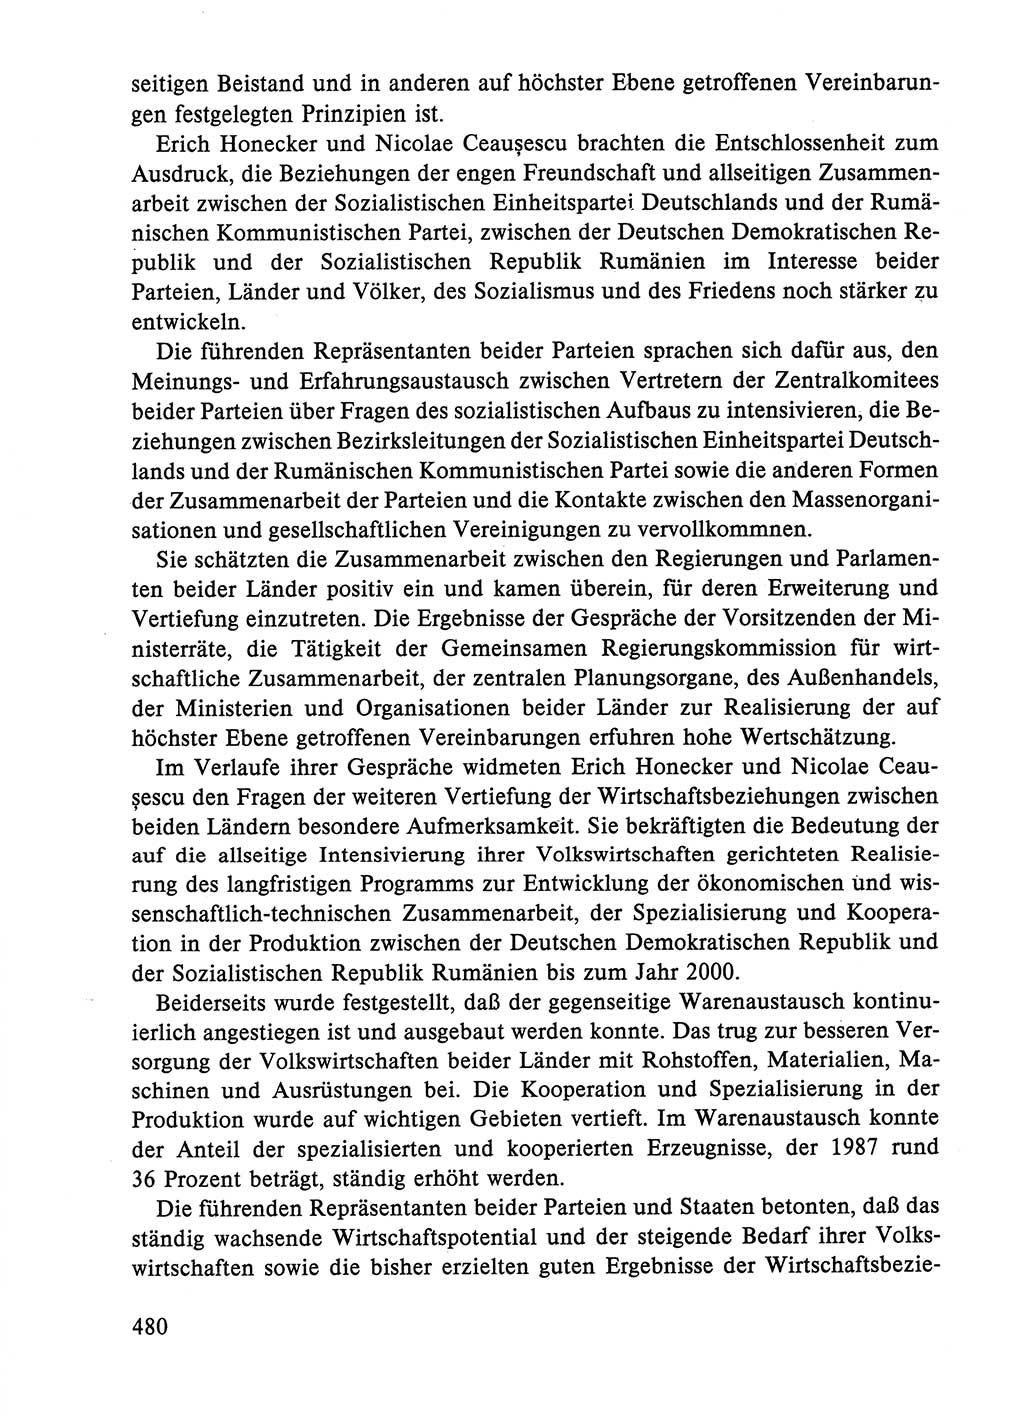 Dokumente der Sozialistischen Einheitspartei Deutschlands (SED) [Deutsche Demokratische Republik (DDR)] 1986-1987, Seite 480 (Dok. SED DDR 1986-1987, S. 480)